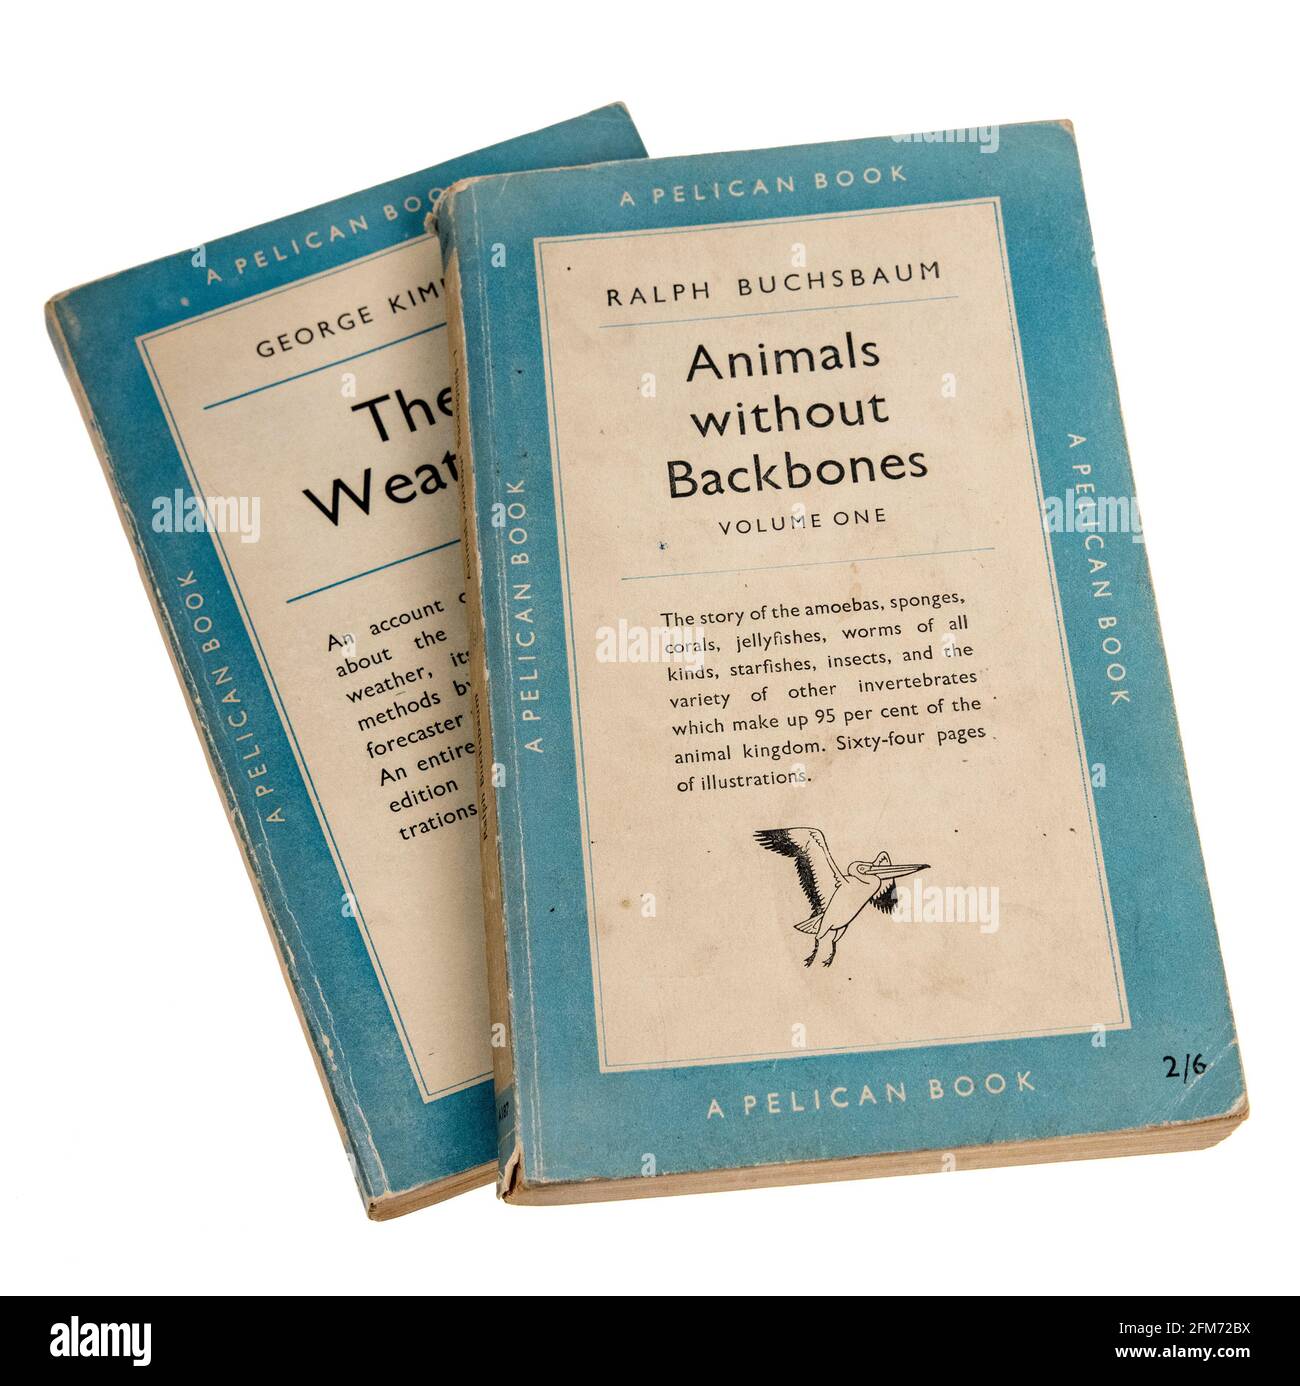 Esempi di libri cartacei Pelican sugli invertebrati e il tempo, pubblicati in questo formato nel 1951 Foto Stock